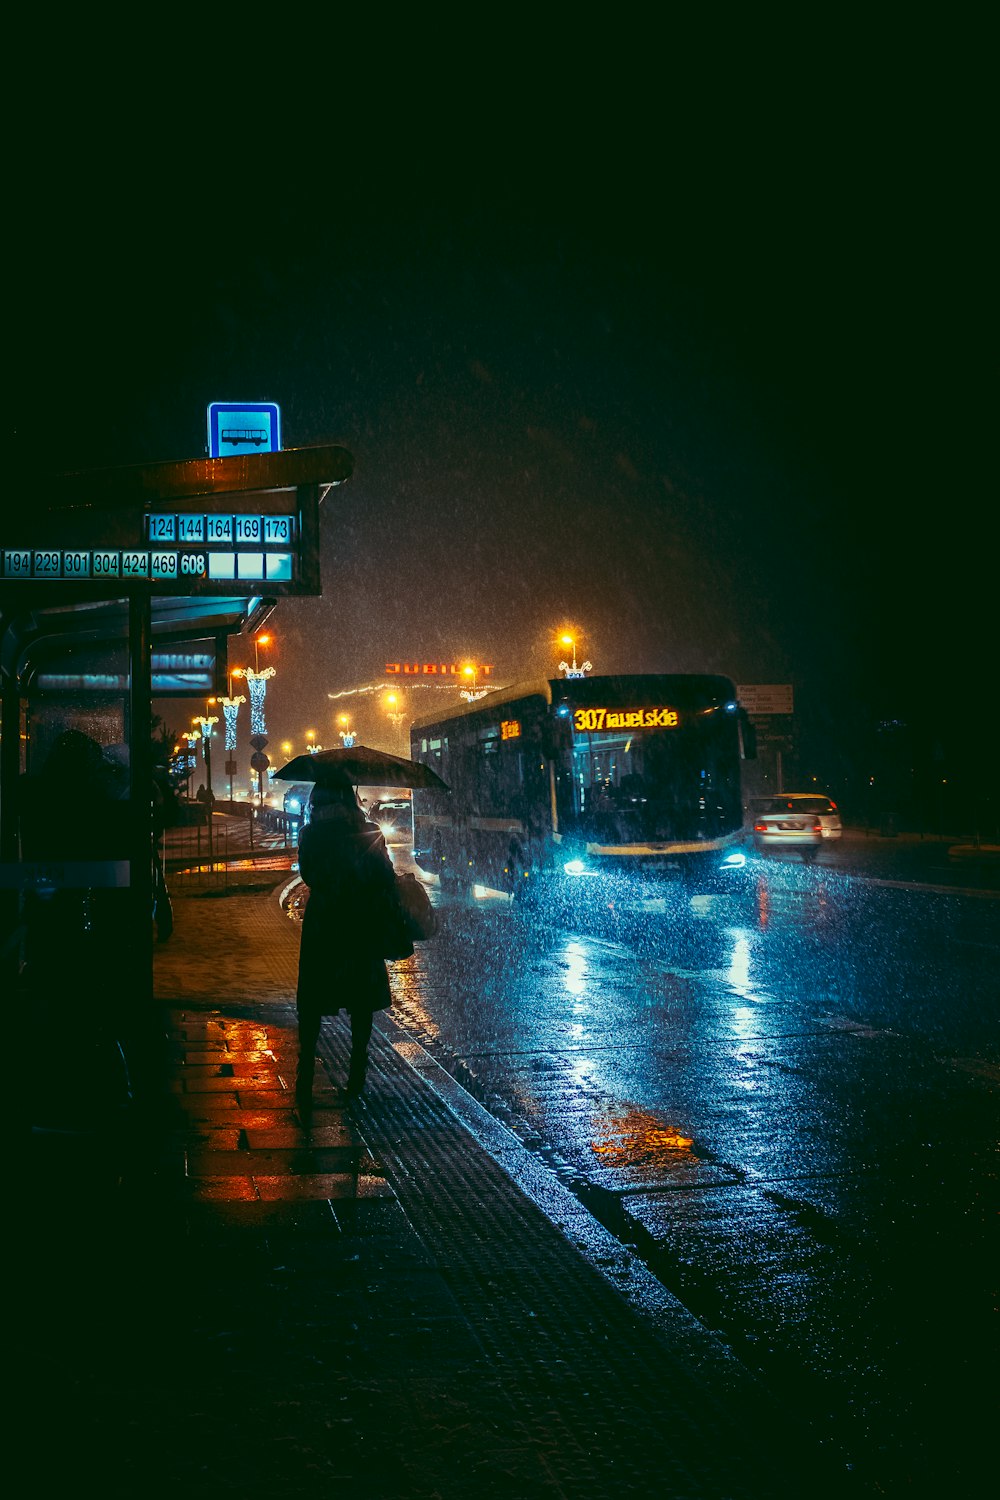 eine Person, die in einer regnerischen Nacht einen Regenschirm hält